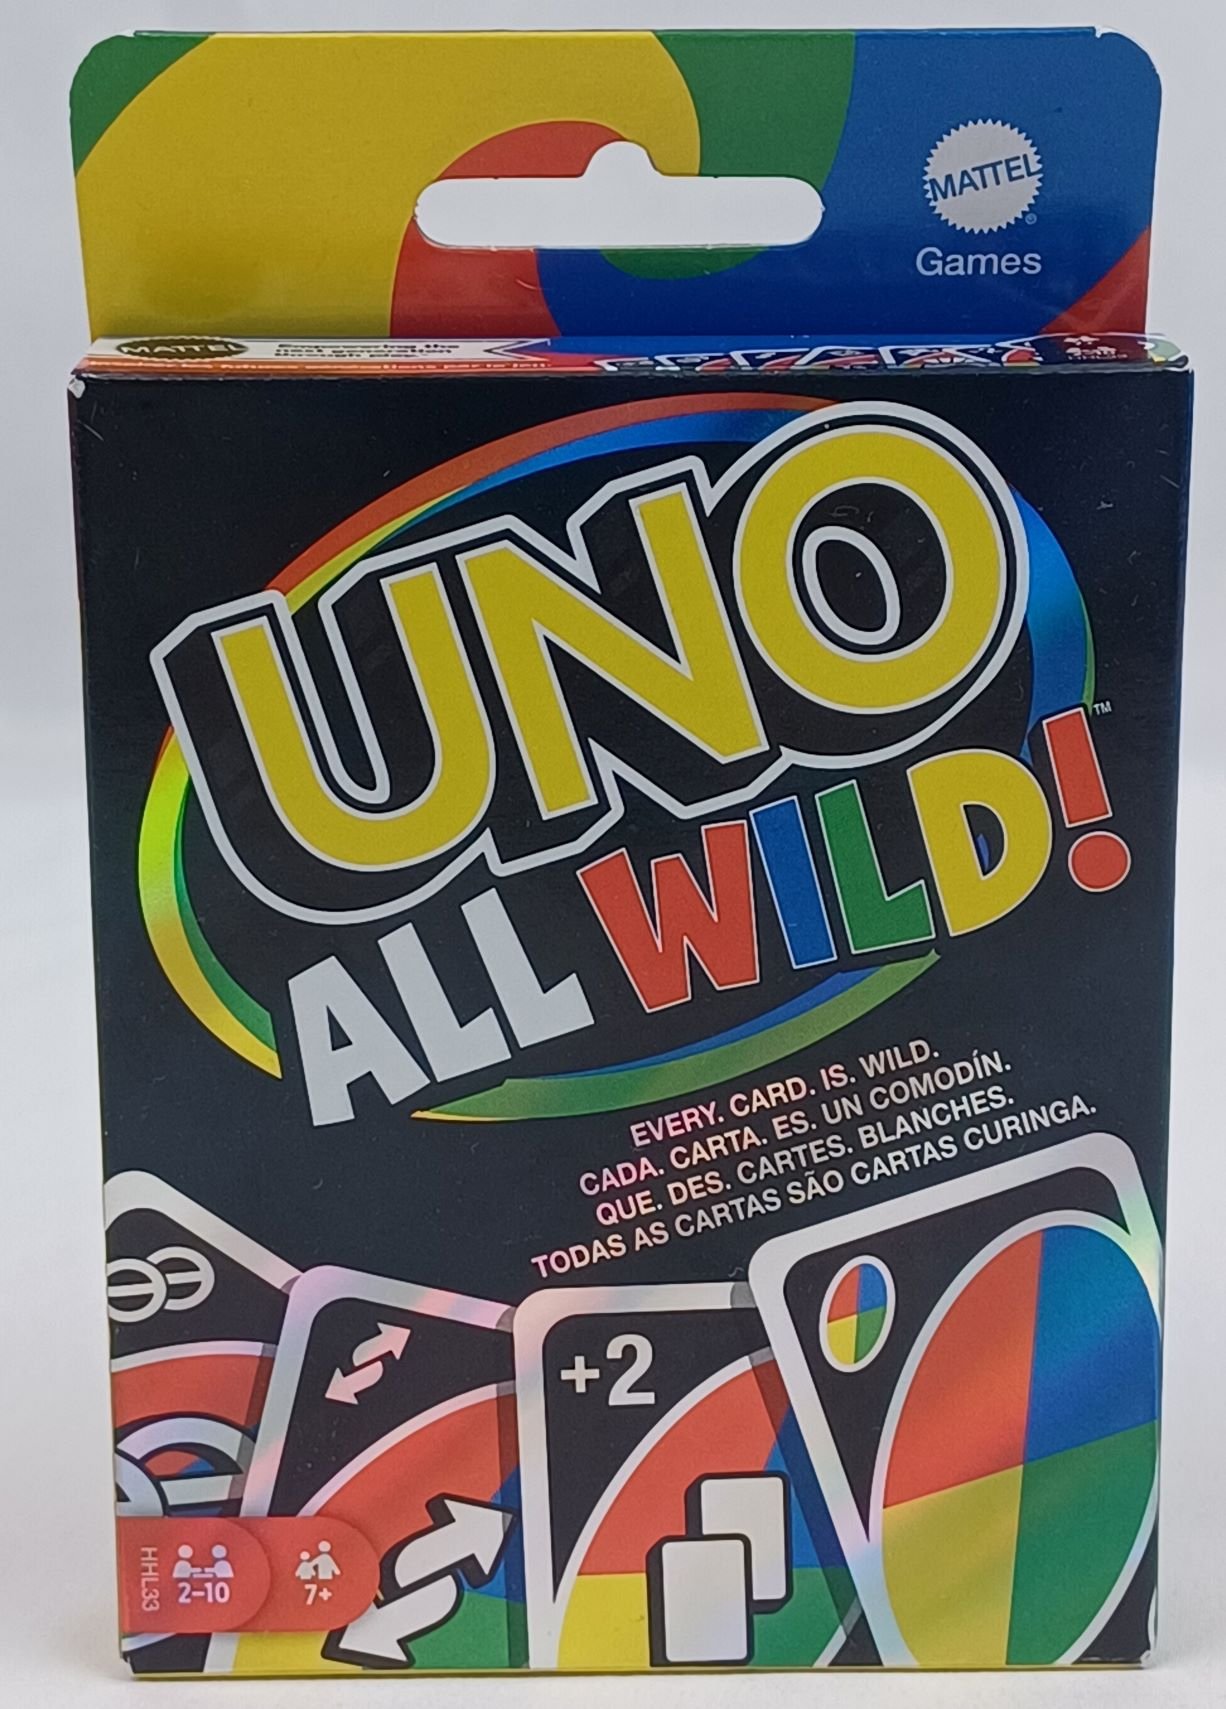 Box for UNO All Wild!